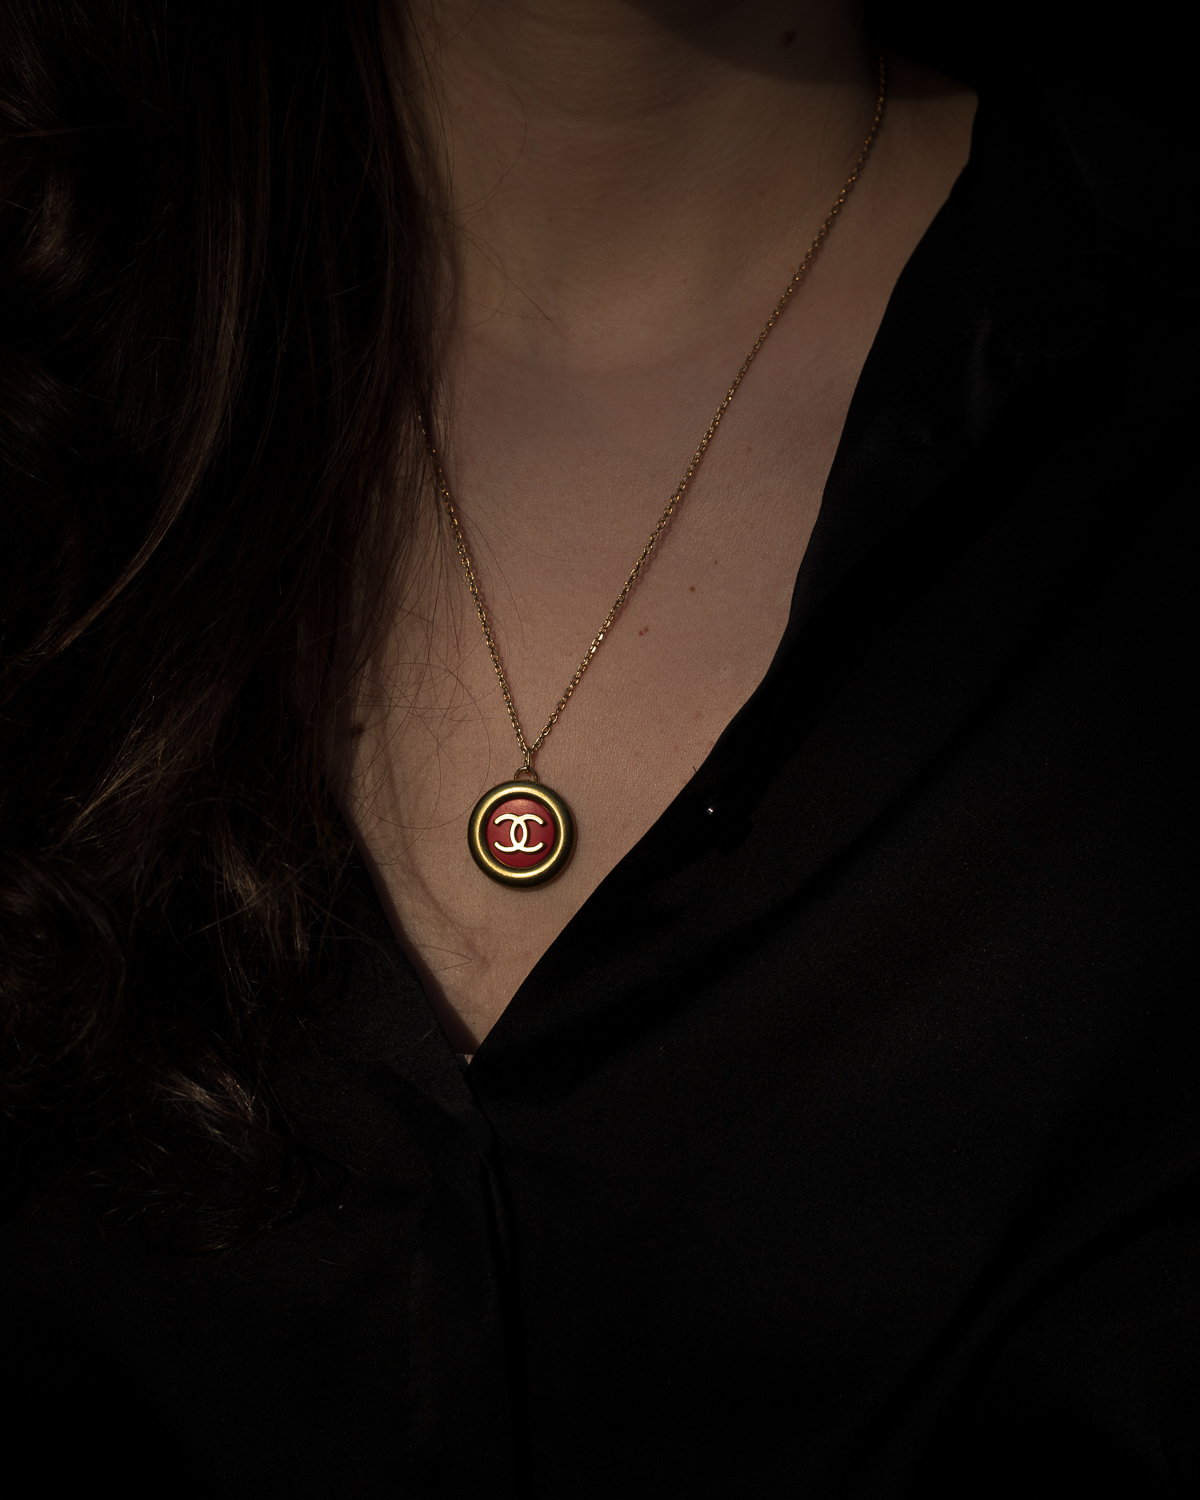 Antique Gold & Red Vintage Chanel Button Pendant Necklace — singulié